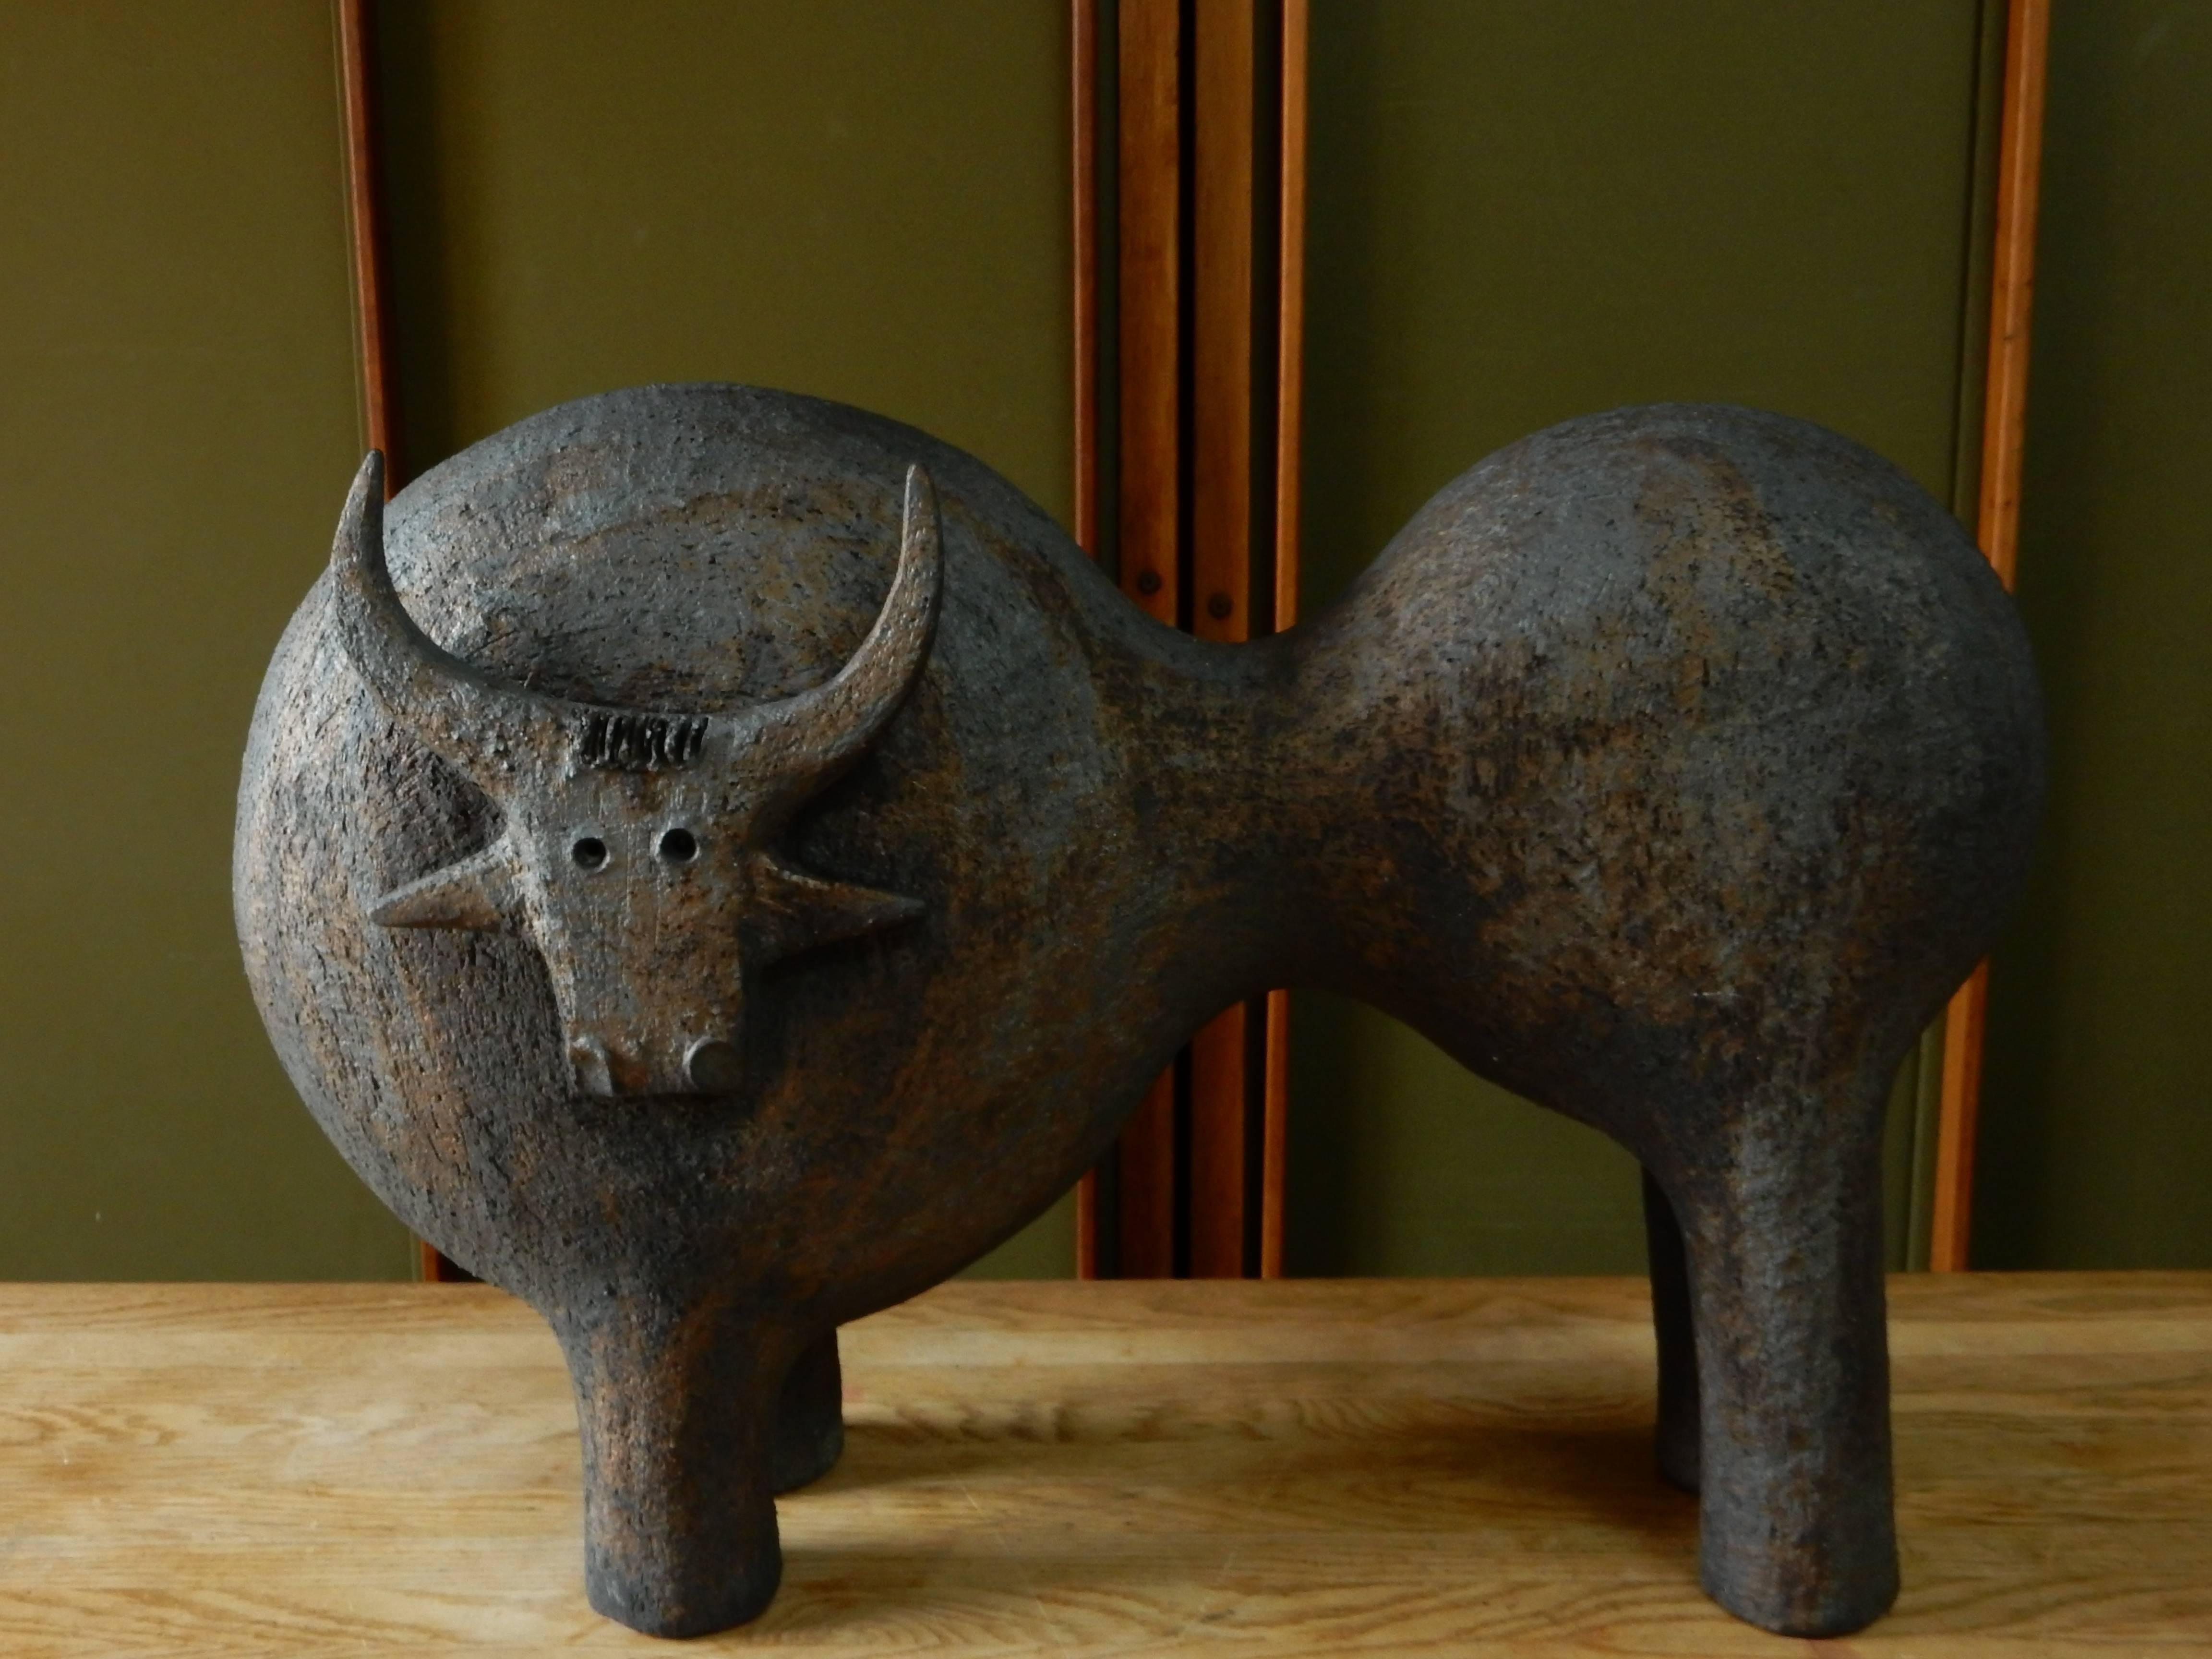 Contemporary Dominique Pouchain Ceramic Bull Sculpture